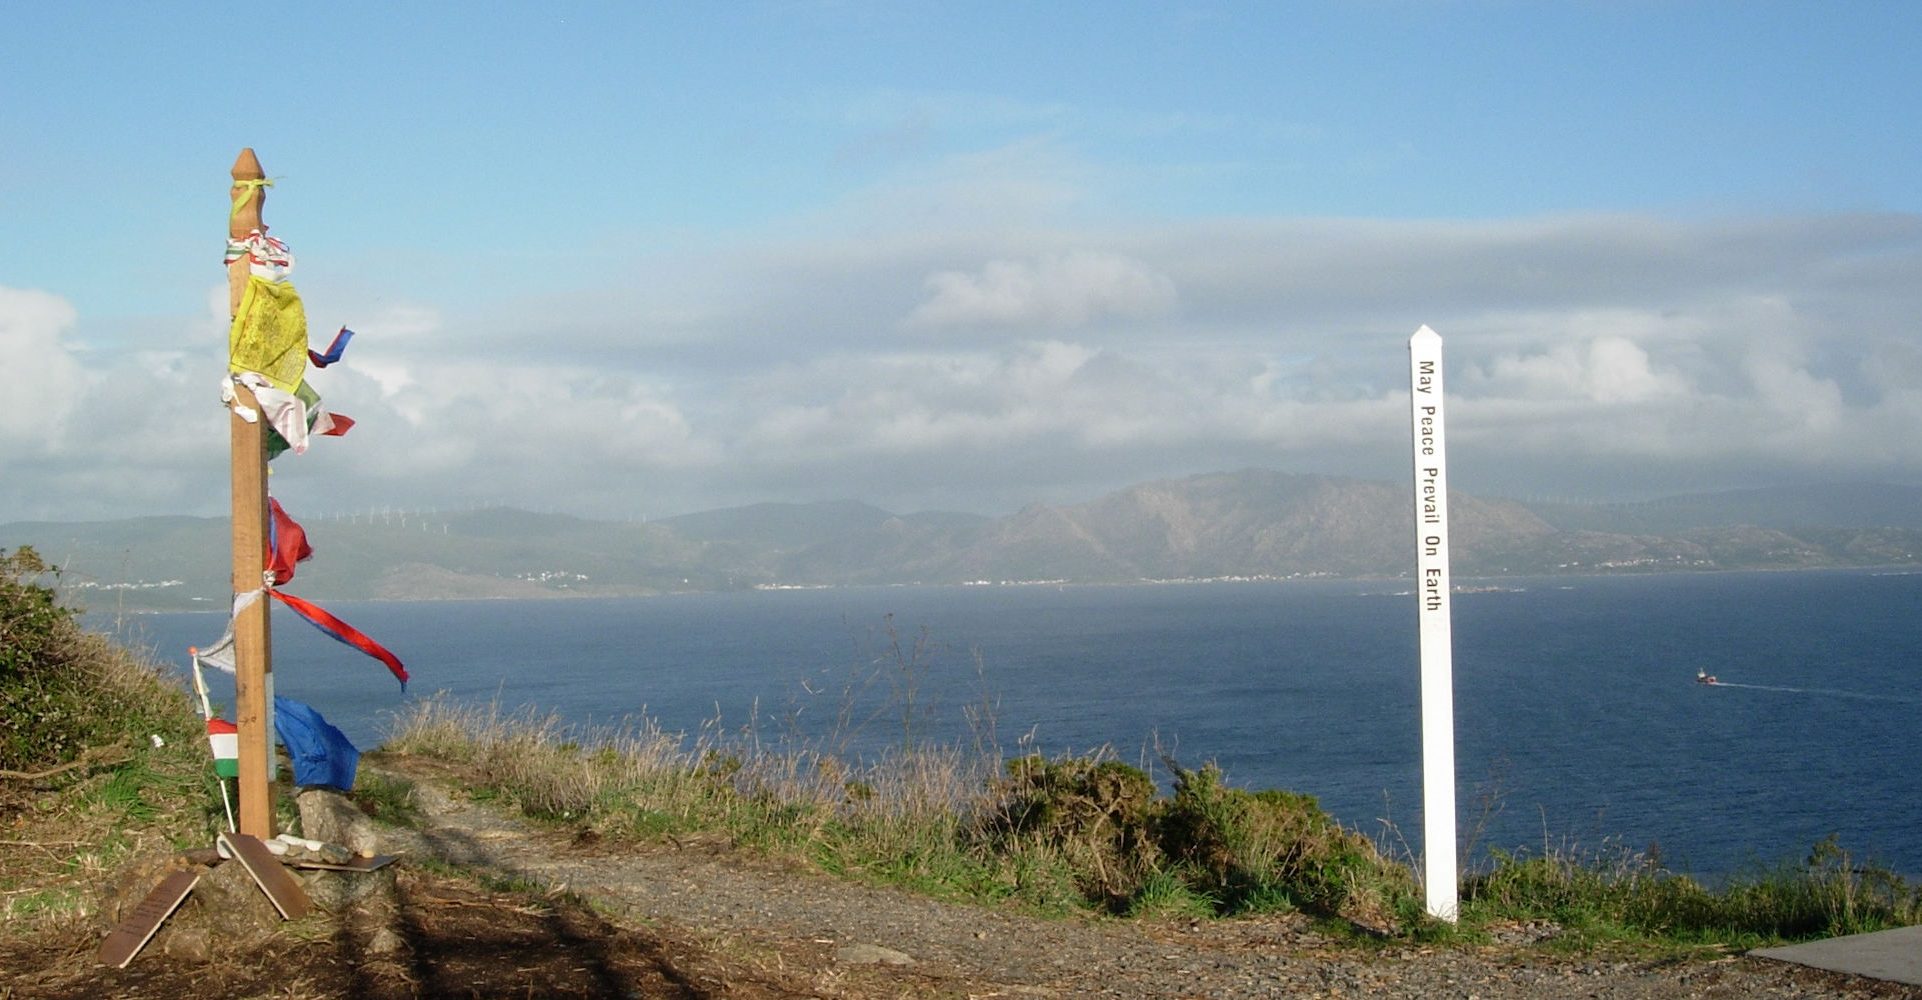 Uferweg mit Blick über das Meer. Im Hintergrund ist Land zu sehen